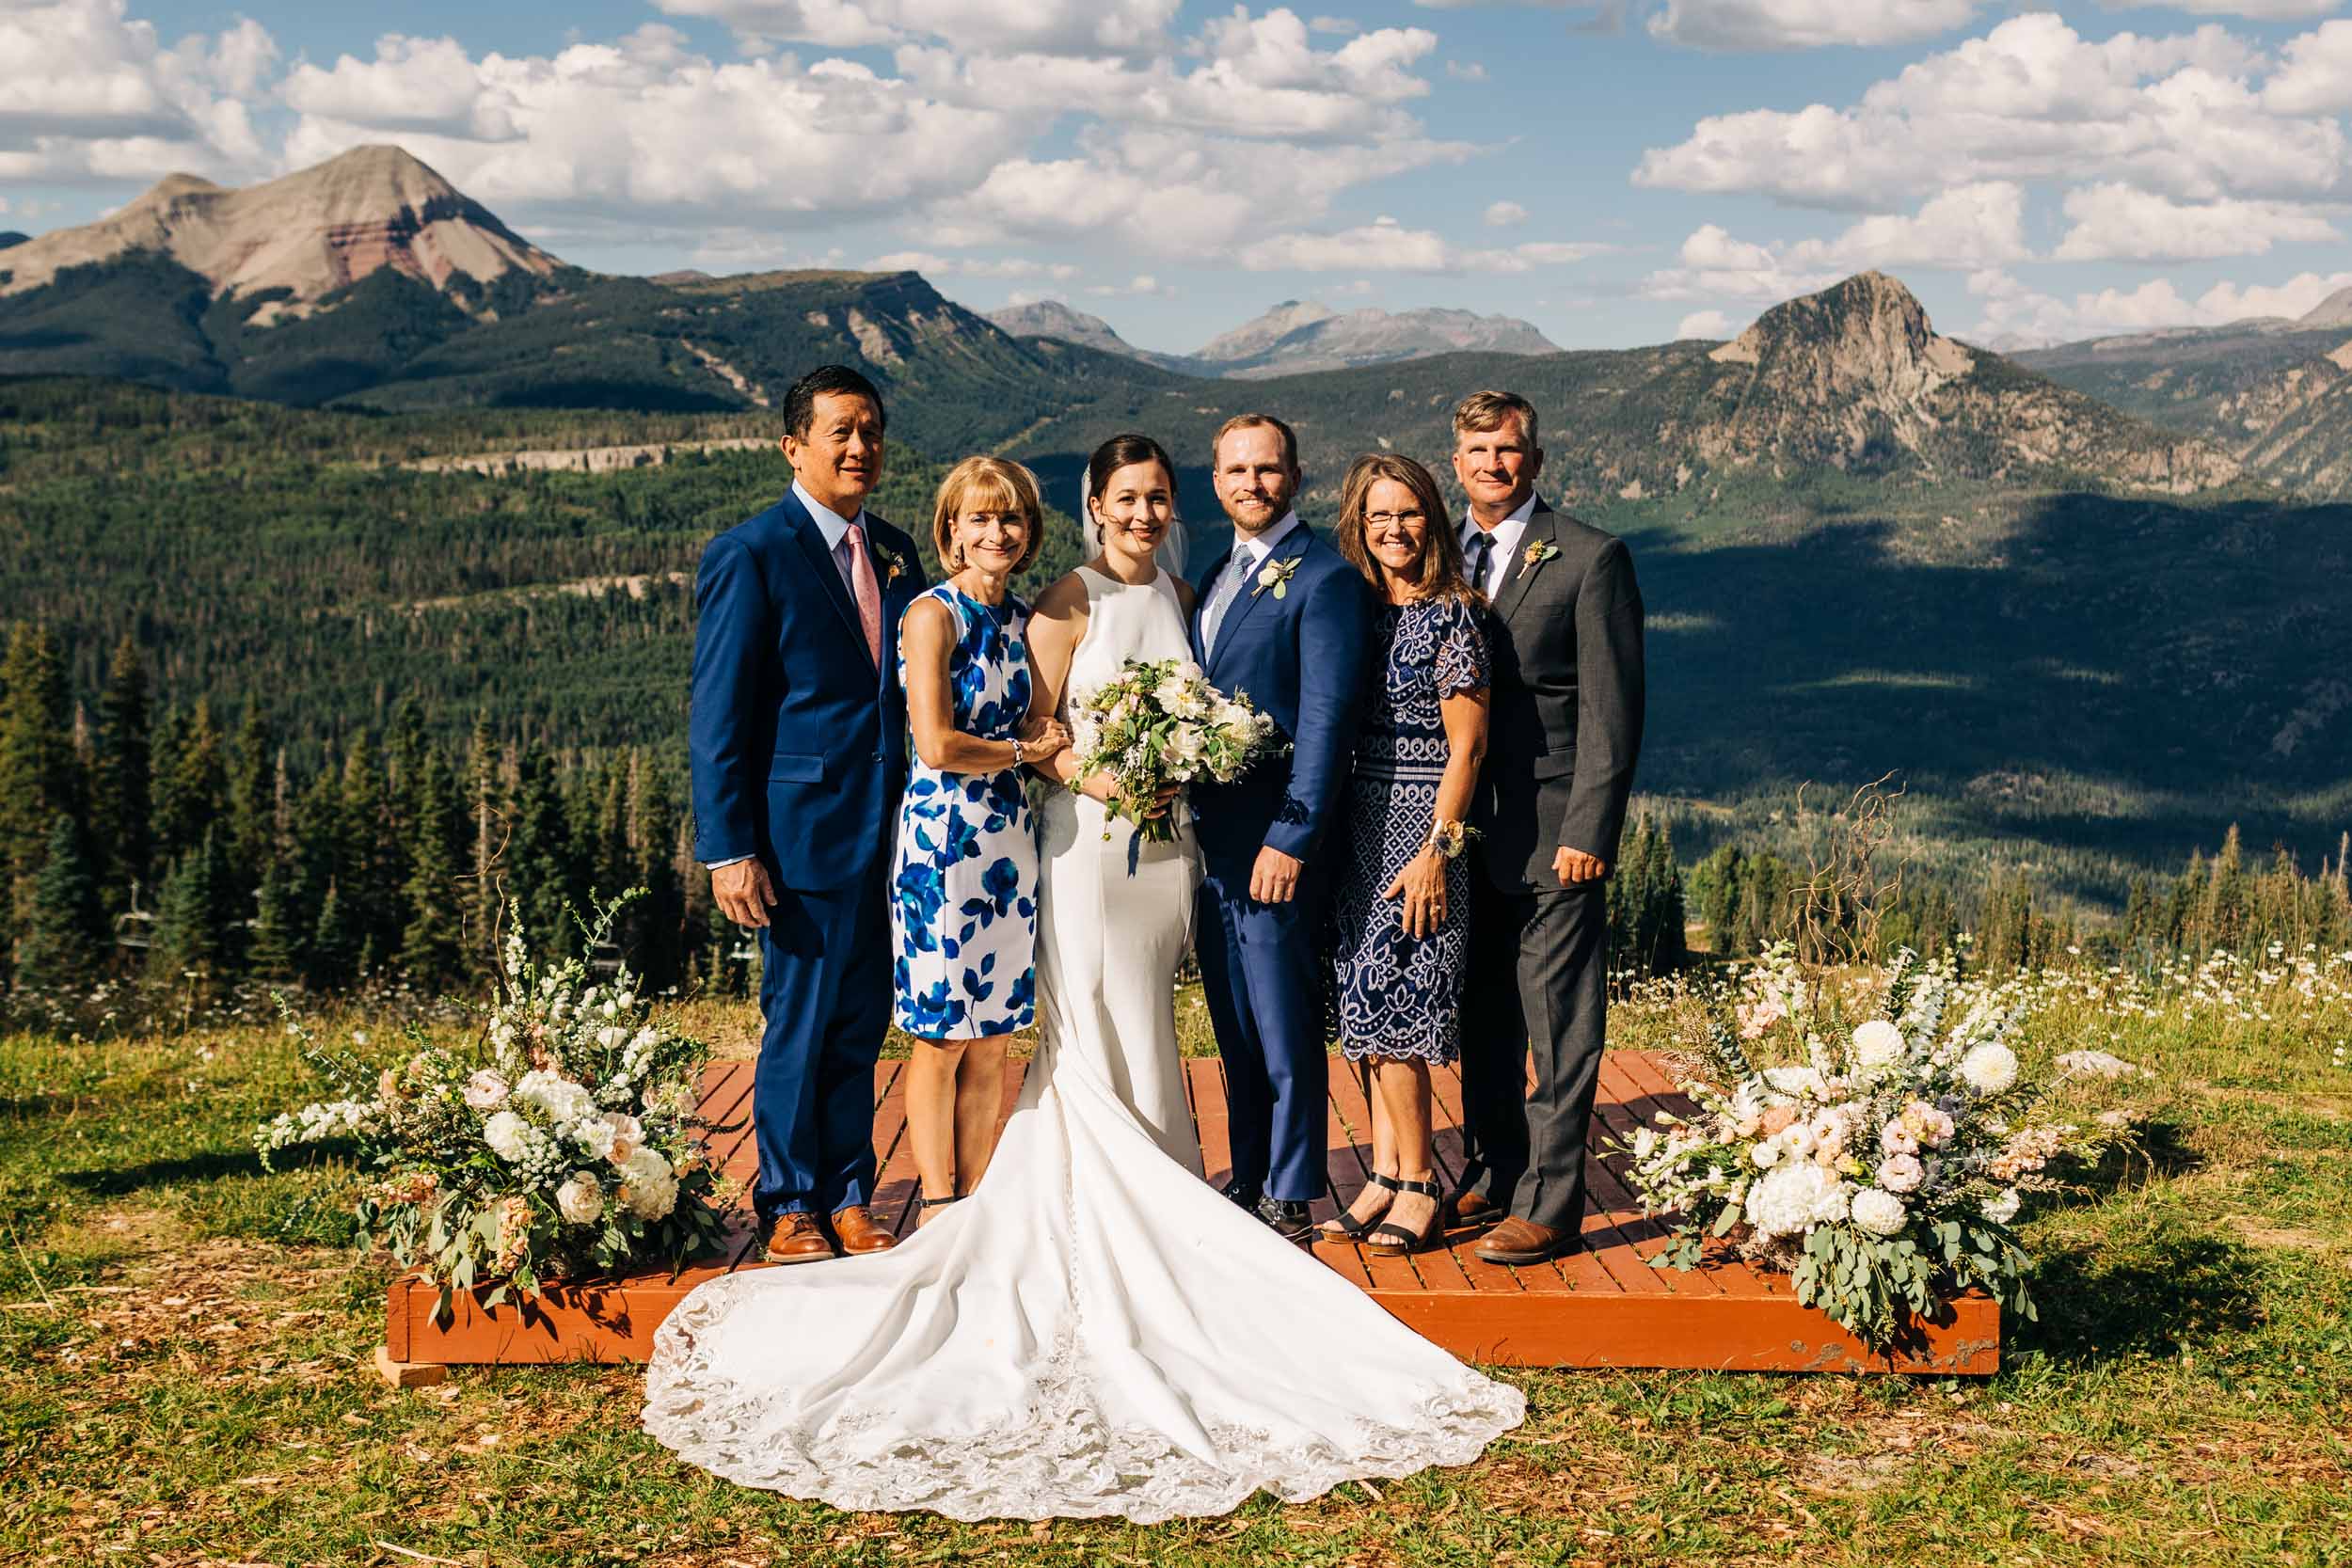 Durango Colorado wedding photos